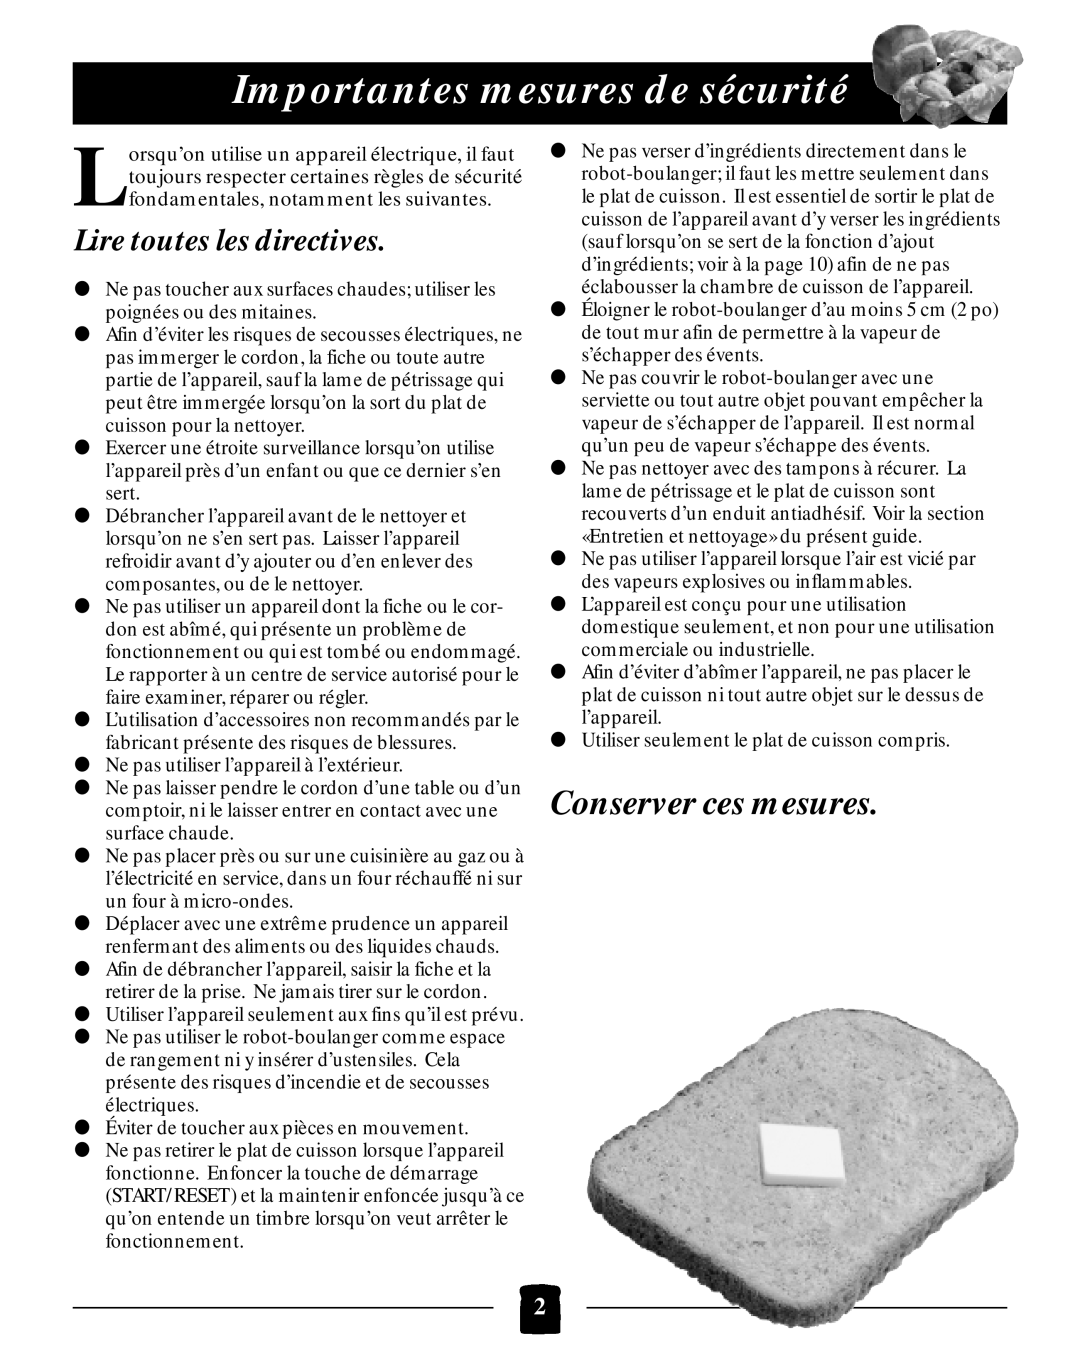 Black & Decker B2005 manual Importantes mesures de sécurité, Lire toutes les directives, Conserver ces mesures 